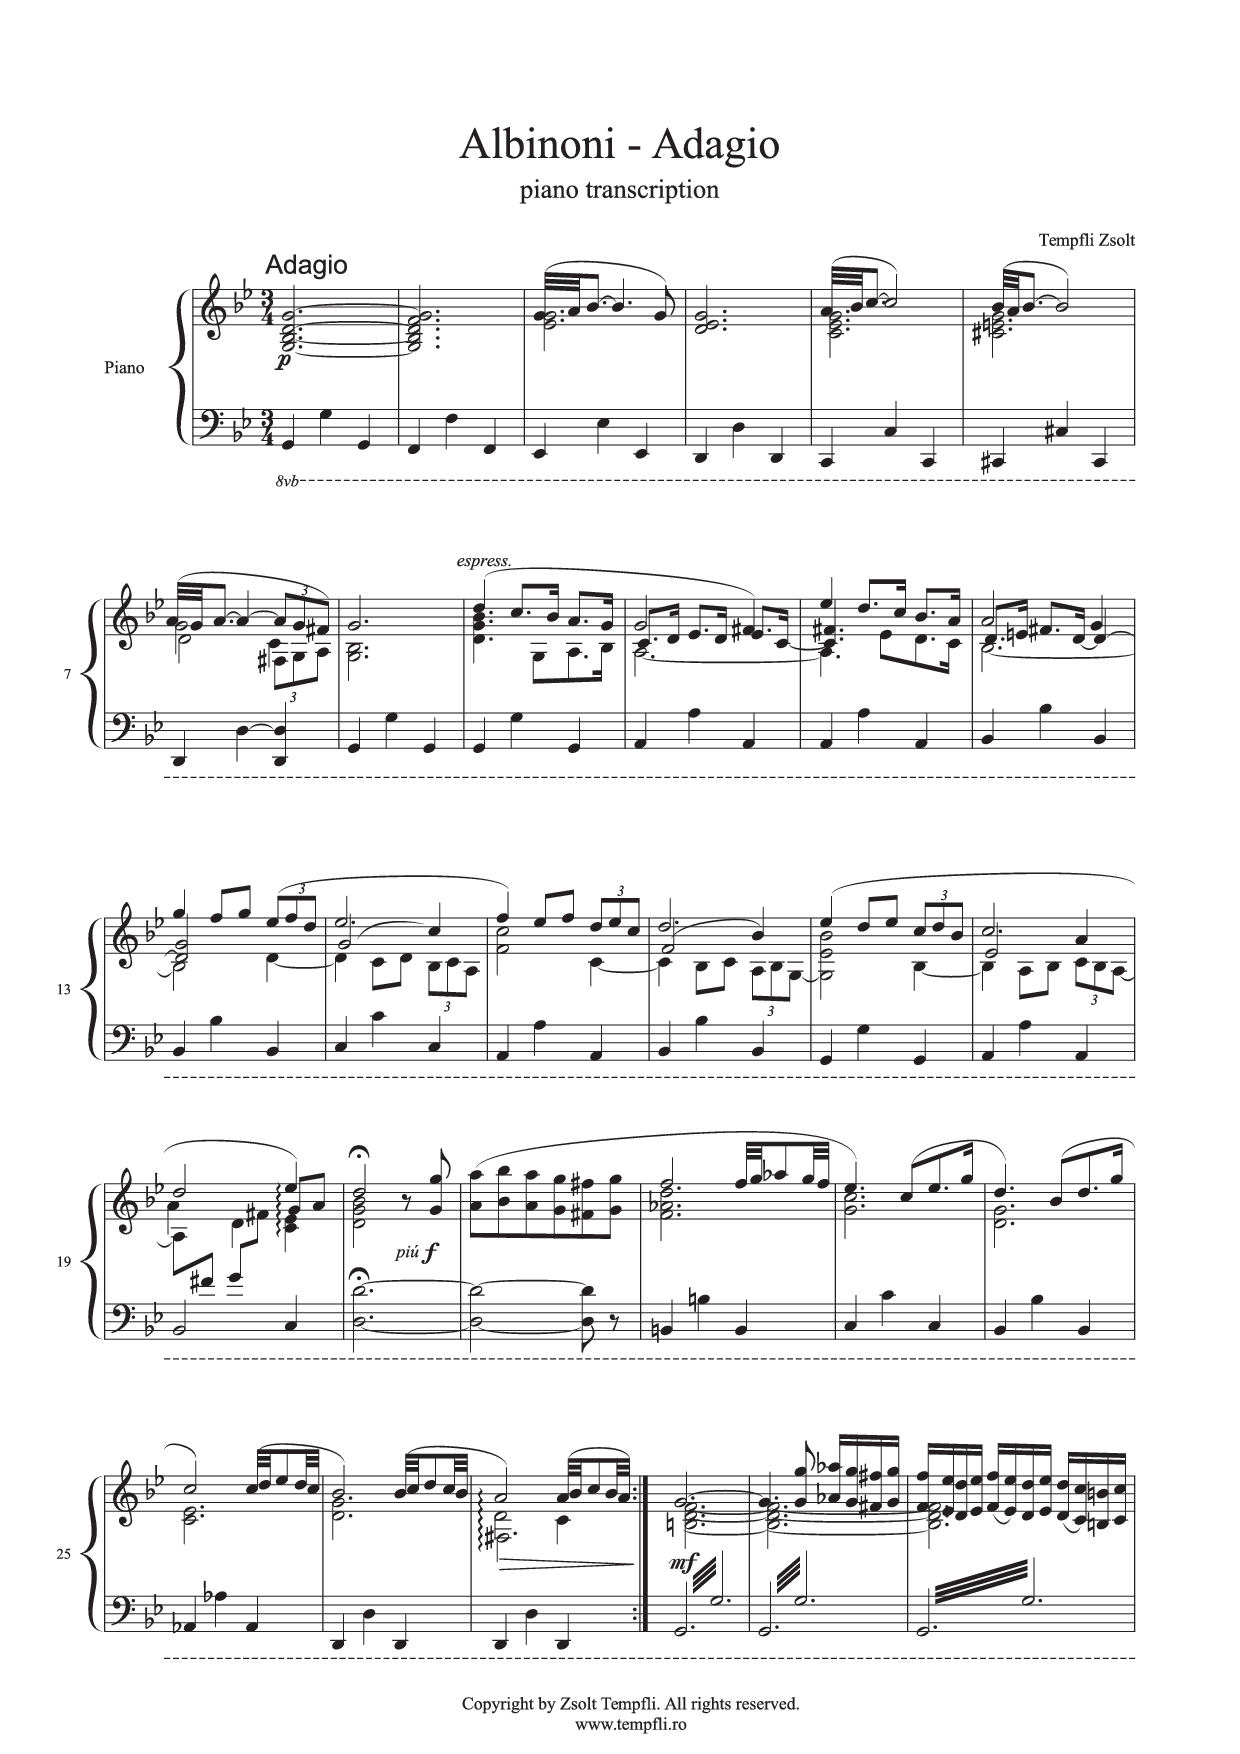 Tempfli Zsolt - Tomaso Albinoni: Adagio zongoraátirat